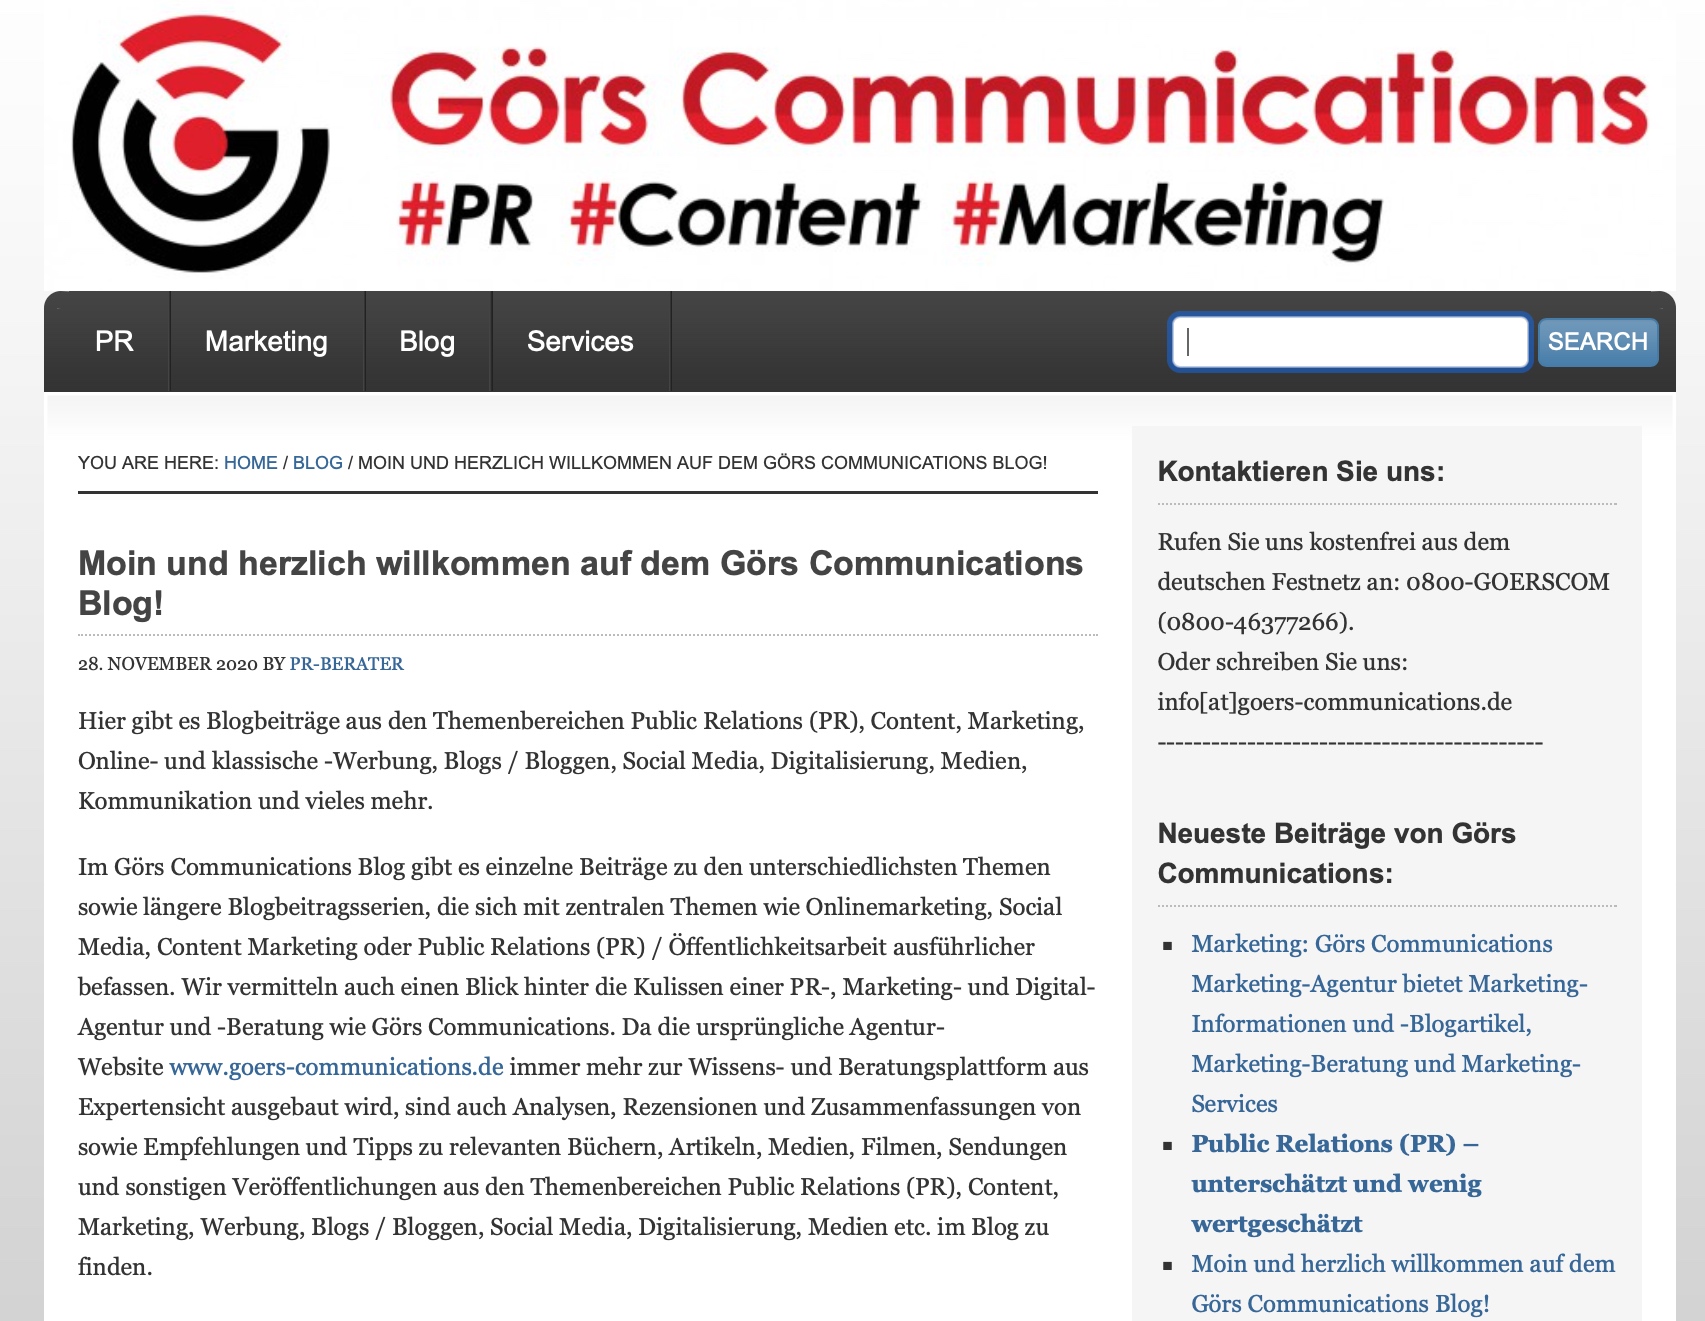 Besuchen Sie den Görs Communications Blog zu PR-, Content-, Marketing- und Digitalisierungsthemen